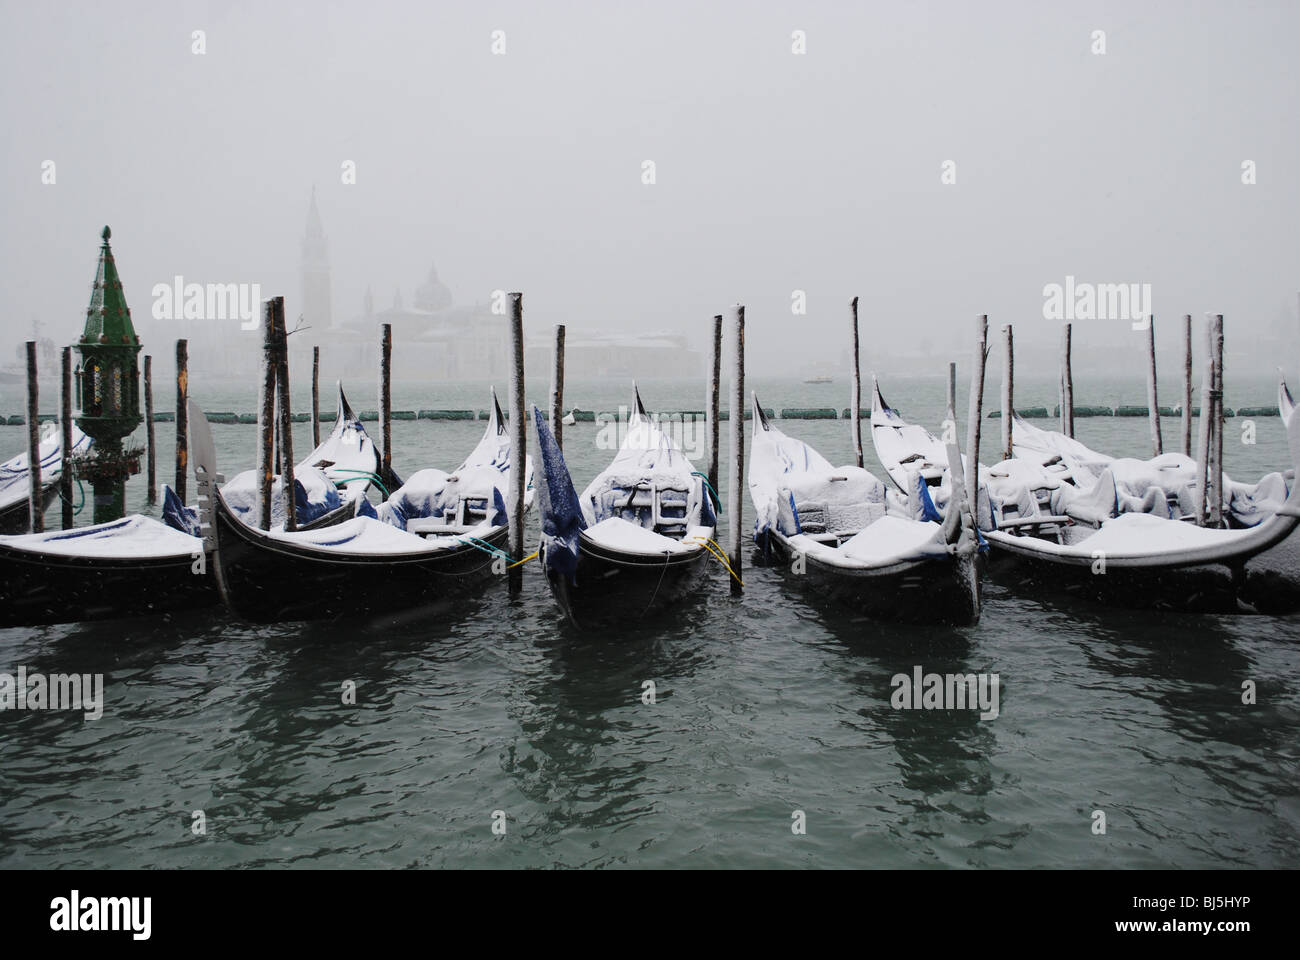 Gondole giacciono a riposo nel Canale della Giudecca sotto una coltre di neve, Piazzetta, Venezia, Italia Foto Stock